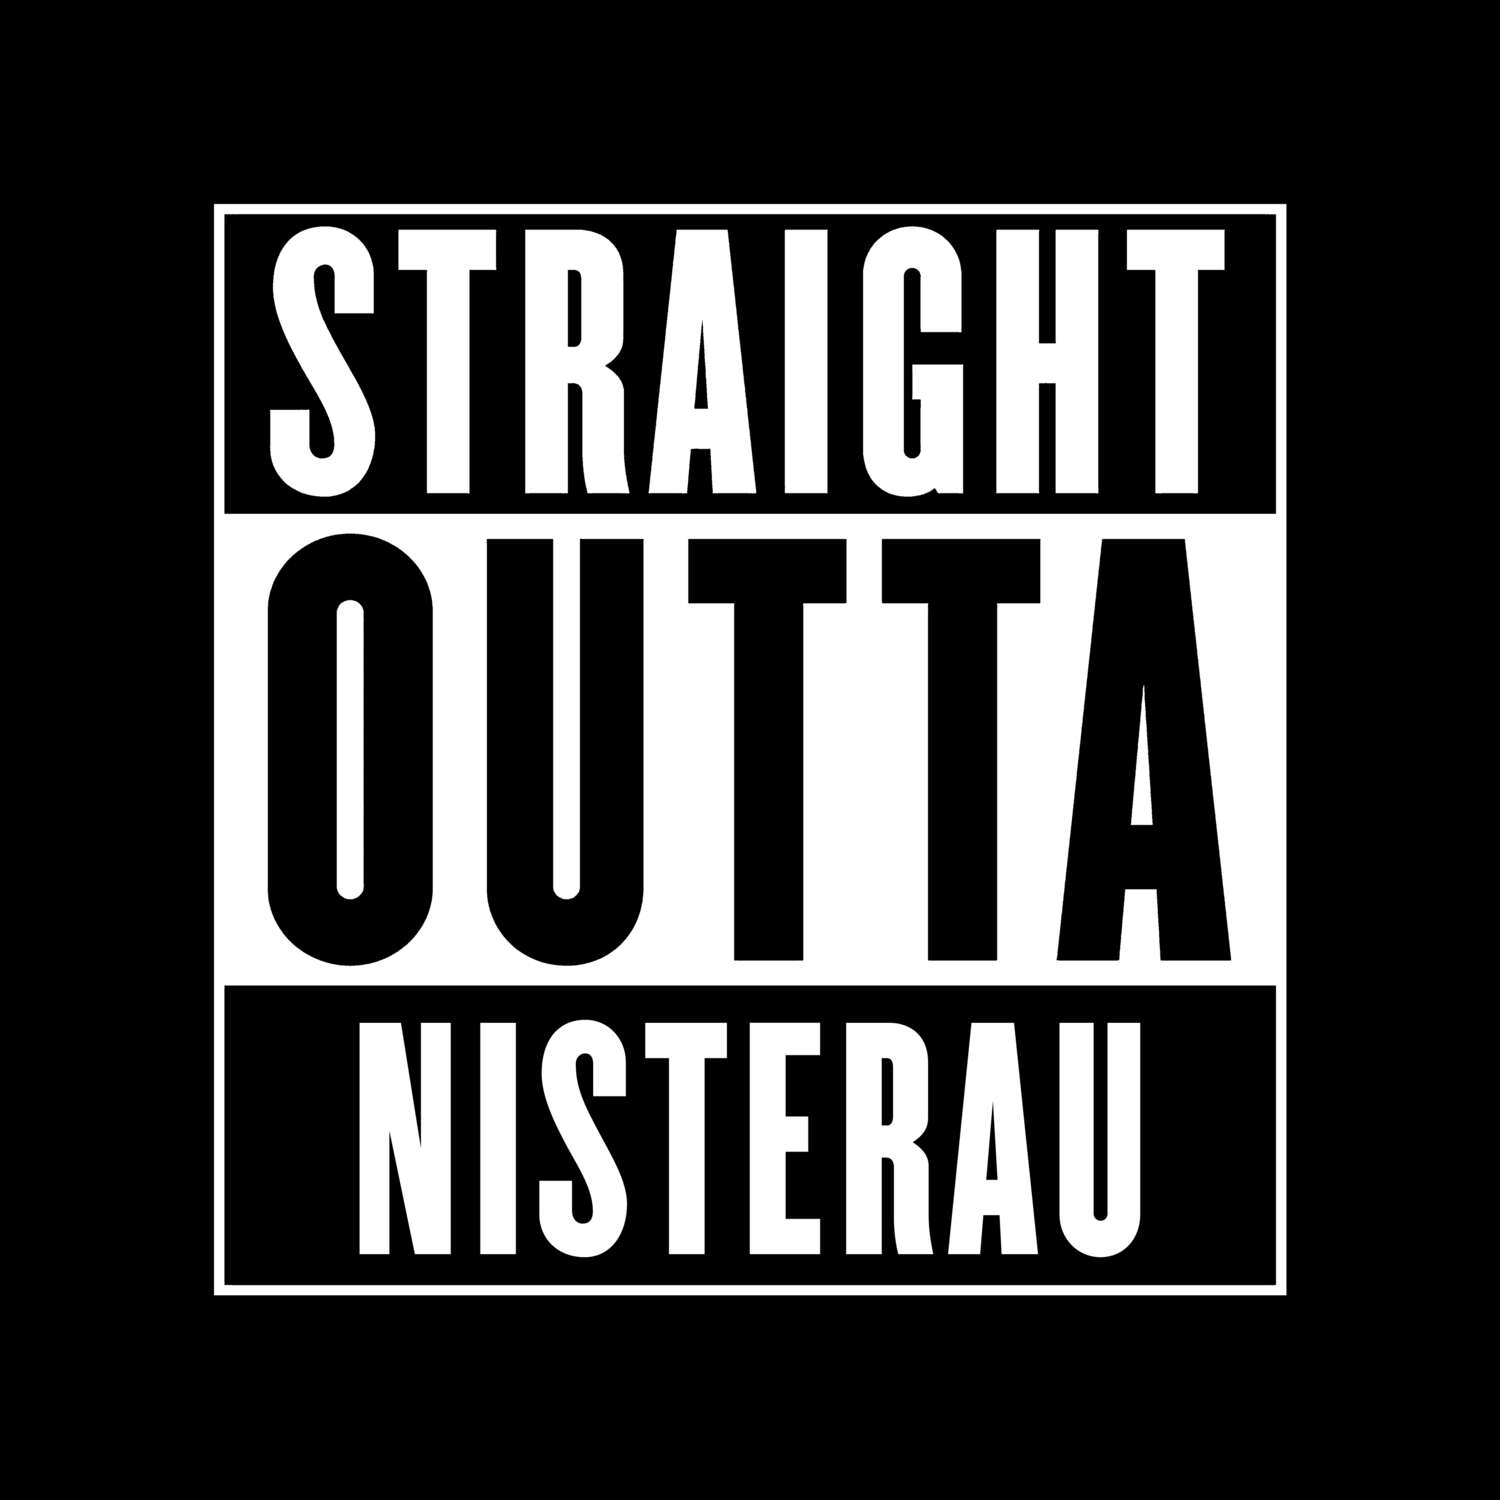 Nisterau T-Shirt »Straight Outta«